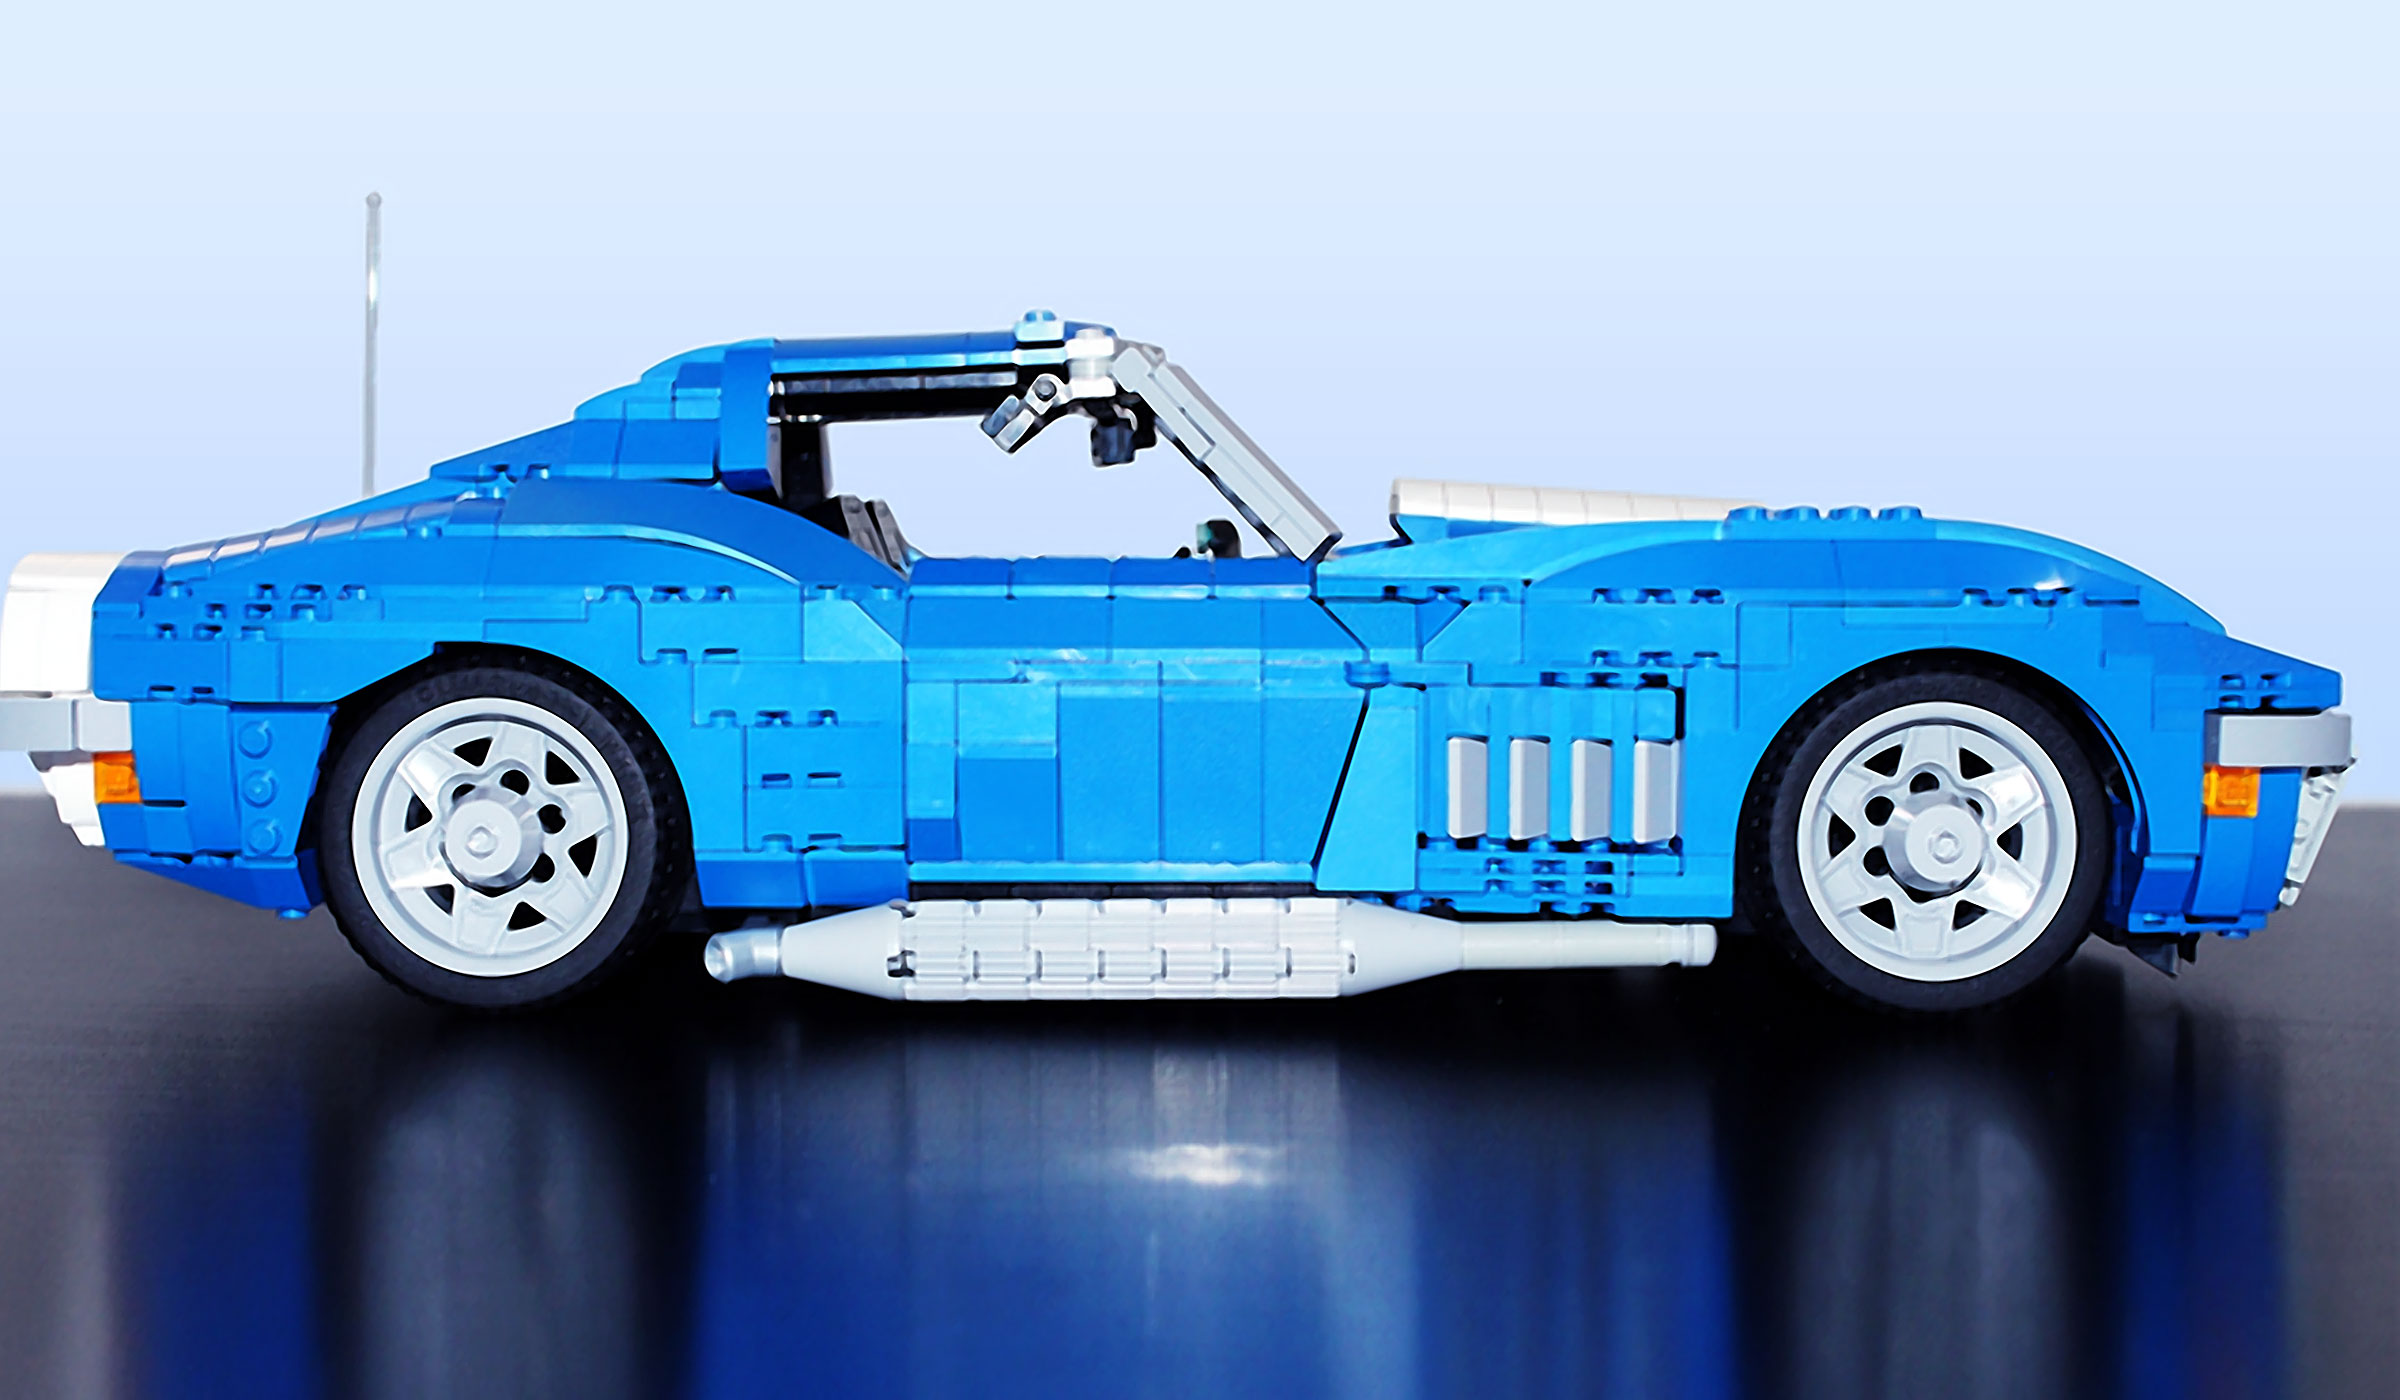 1969 Lego Chevrolet Corvette